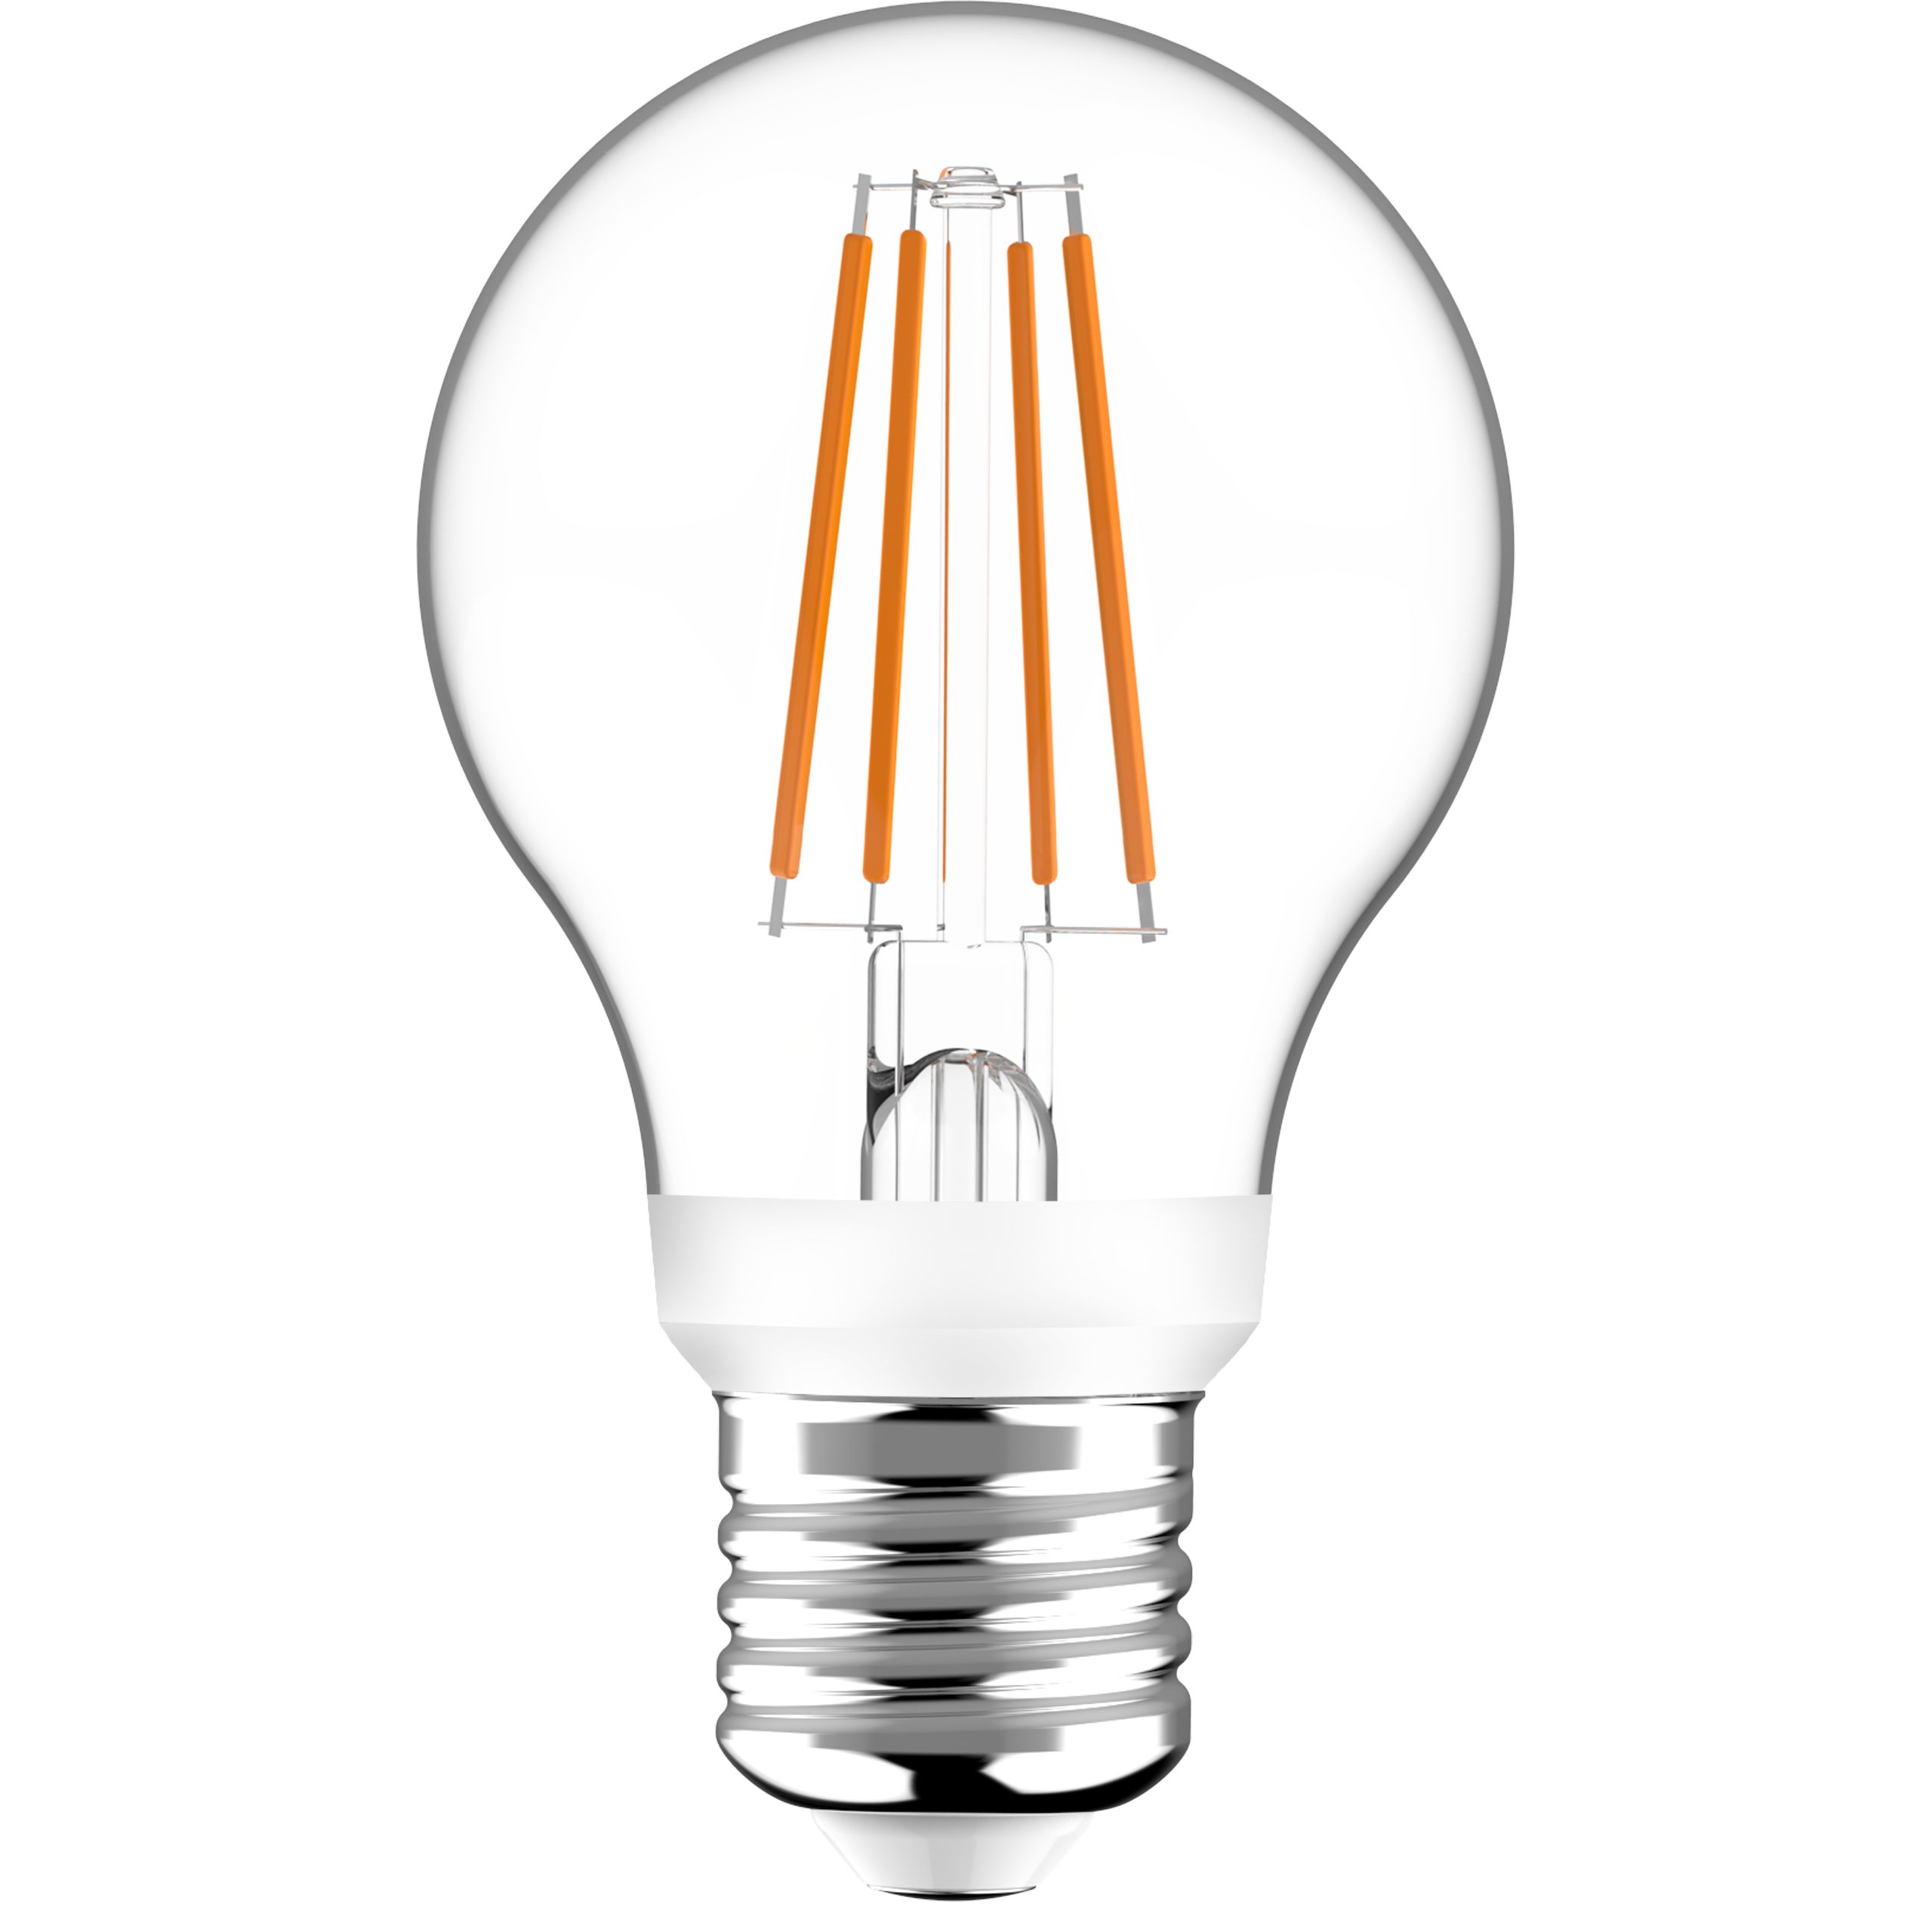 LED's light LED-Leuchtmittel 0611127 LED-Birne, E27, E27 mit HF-Bewegungssensor 7W warmweiß Dämmerungssensor